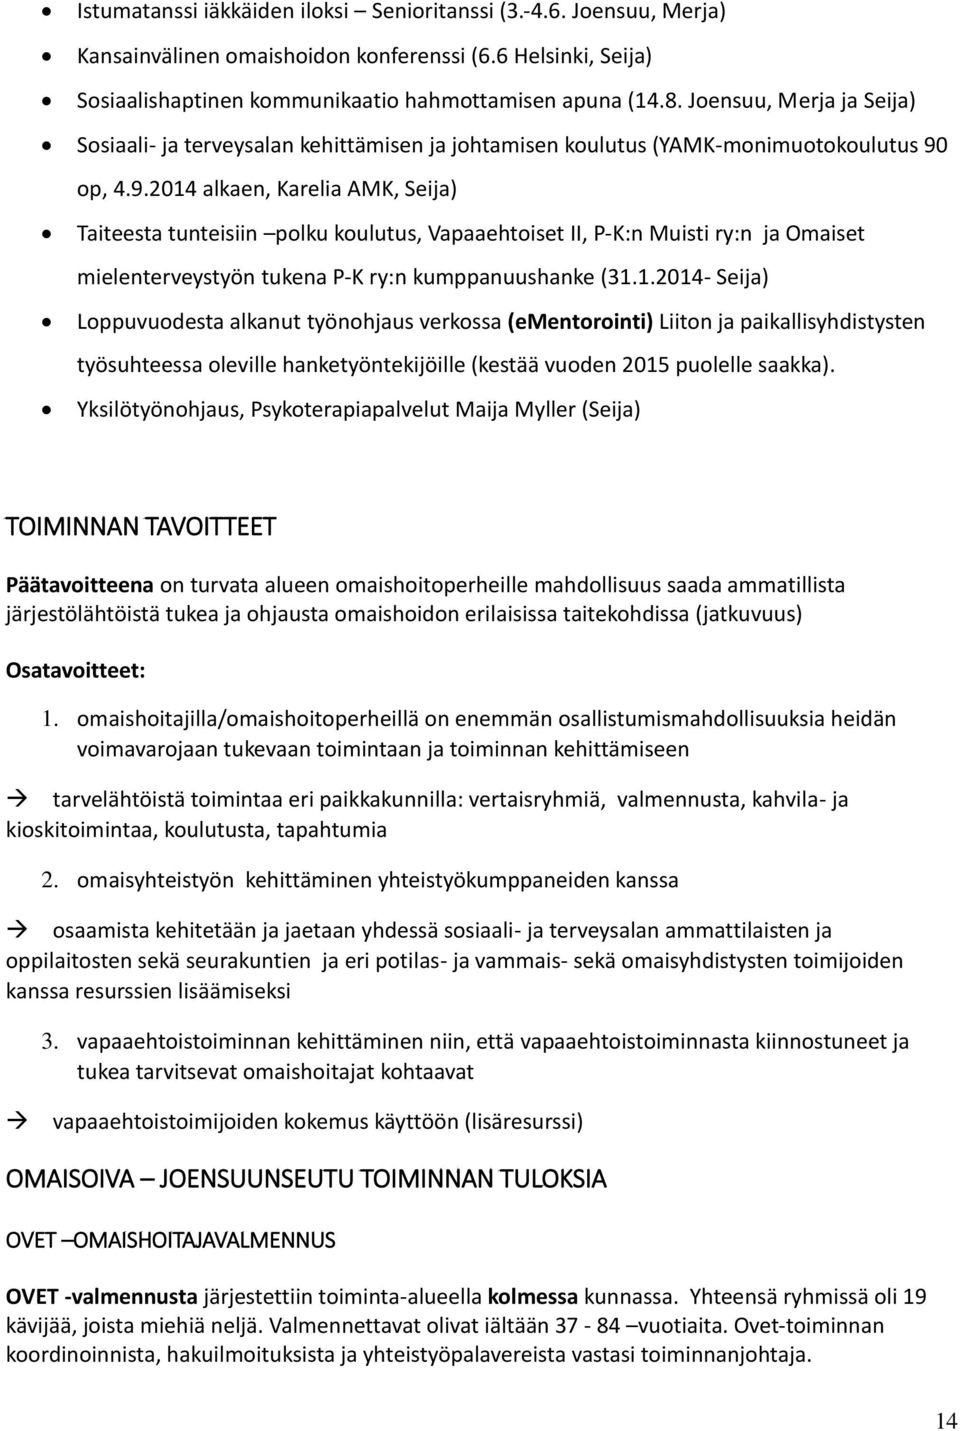 op, 4.9.2014 alkaen, Karelia AMK, Seija) Taiteesta tunteisiin polku koulutus, Vapaaehtoiset II, P-K:n Muisti ry:n ja Omaiset mielenterveystyön tukena P-K ry:n kumppanuushanke (31.1.2014- Seija) Loppuvuodesta alkanut työnohjaus verkossa (ementorointi) Liiton ja paikallisyhdistysten työsuhteessa oleville hanketyöntekijöille (kestää vuoden 2015 puolelle saakka).